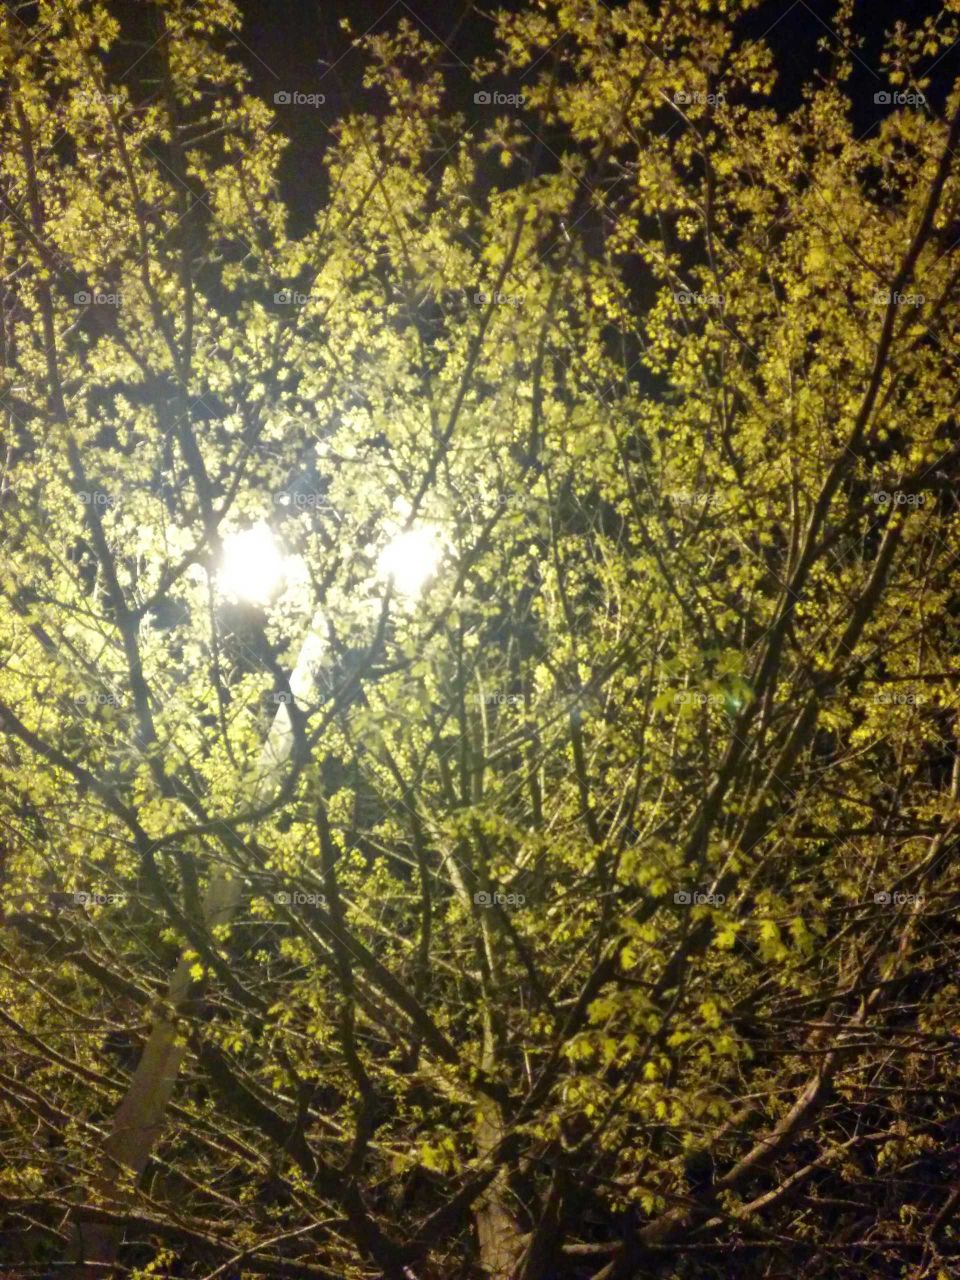 Yellow Flowered Tree at Night